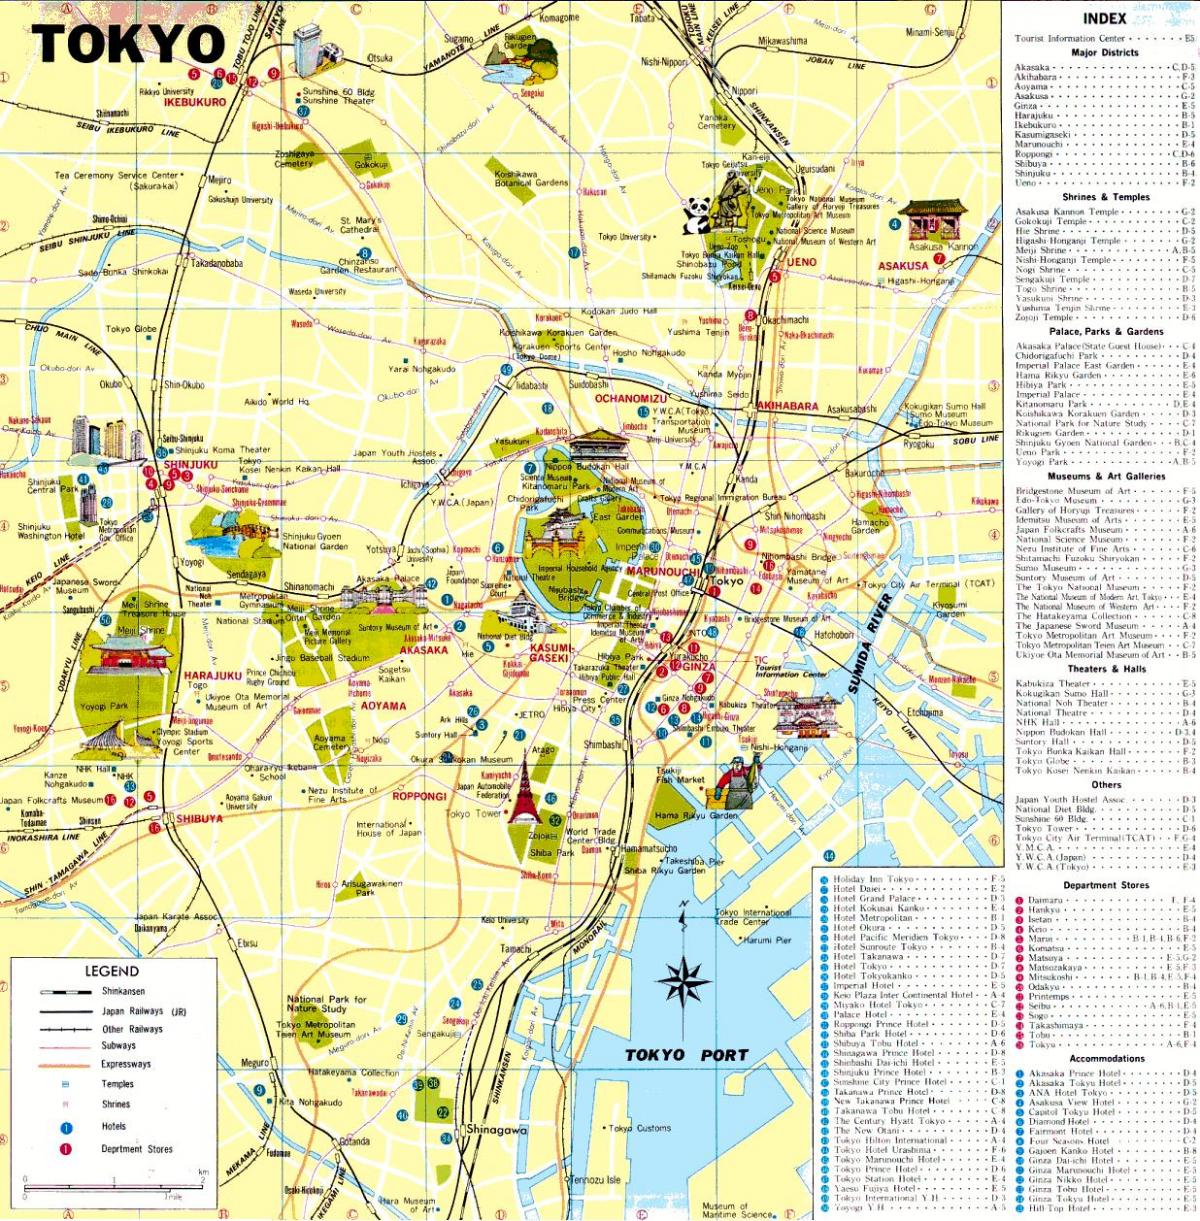 El mapa de tokio para el turista